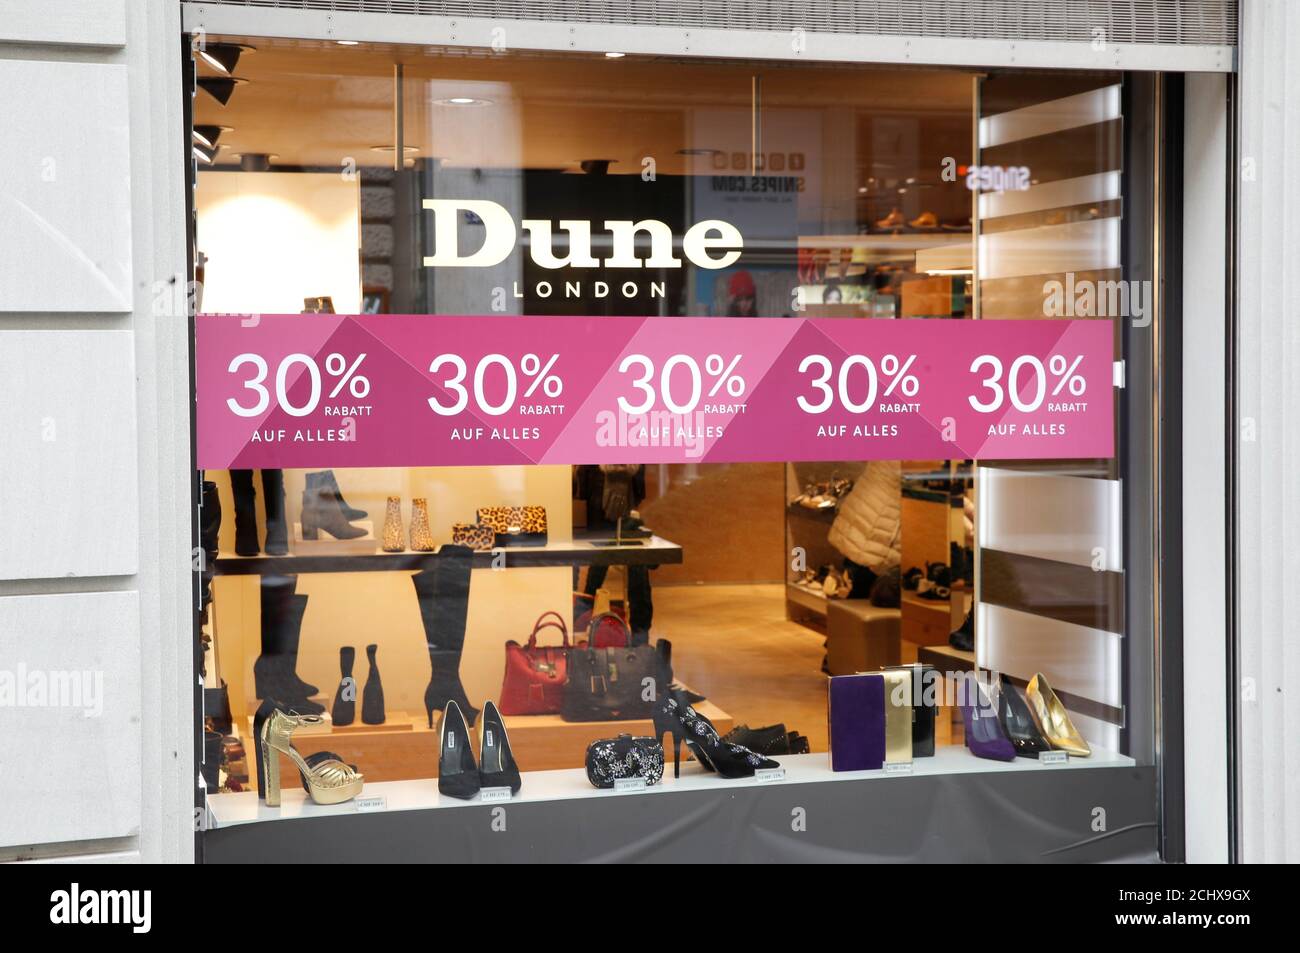 Des réductions de prix sont proposées dans une boutique de la société  britannique Dune London, spécialisée dans les chaussures et accessoires de  mode, à Zurich, en Suisse, le 10 décembre 2018. REUTERS/Arnd